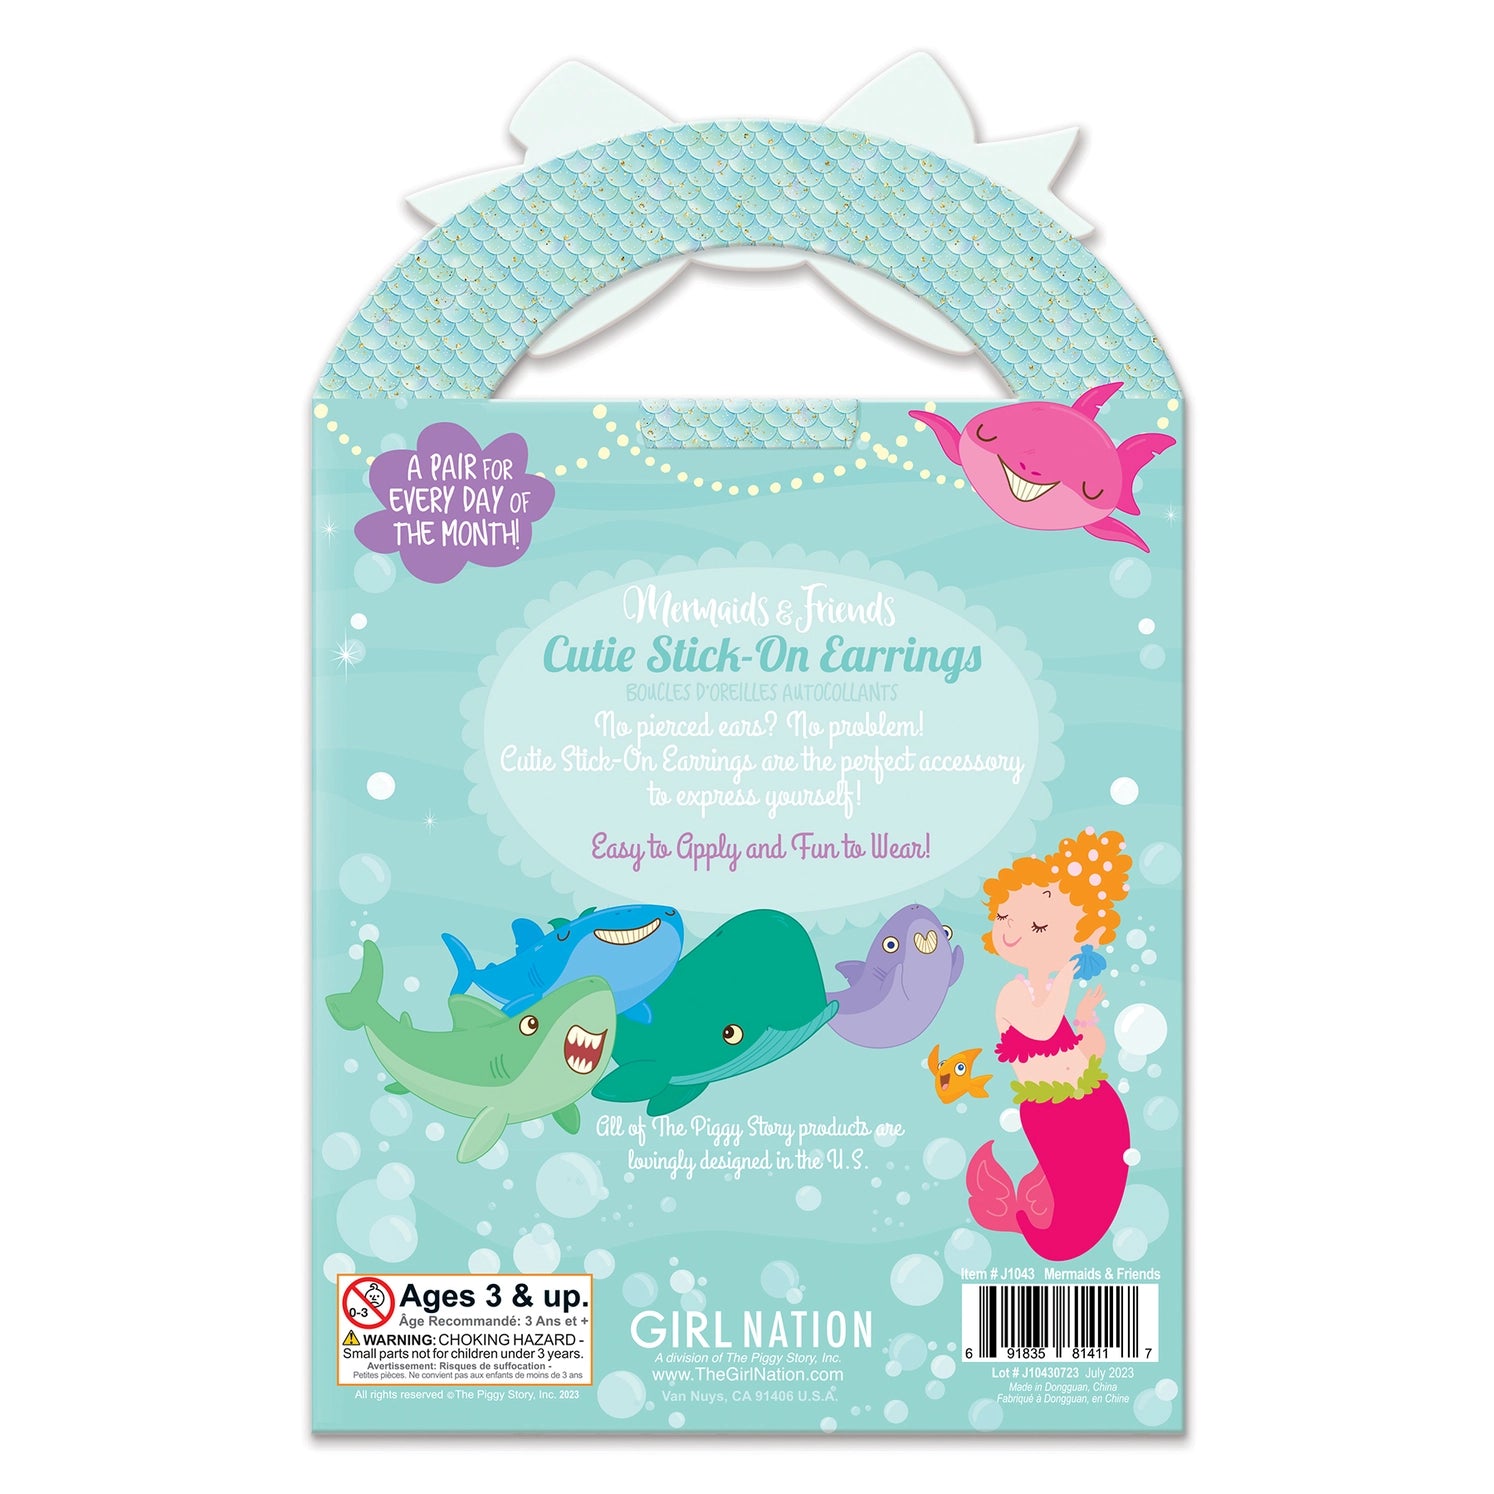 Cutie Stick-On Earrings - Mermaid & Friends - Twinkle Twinkle Little One